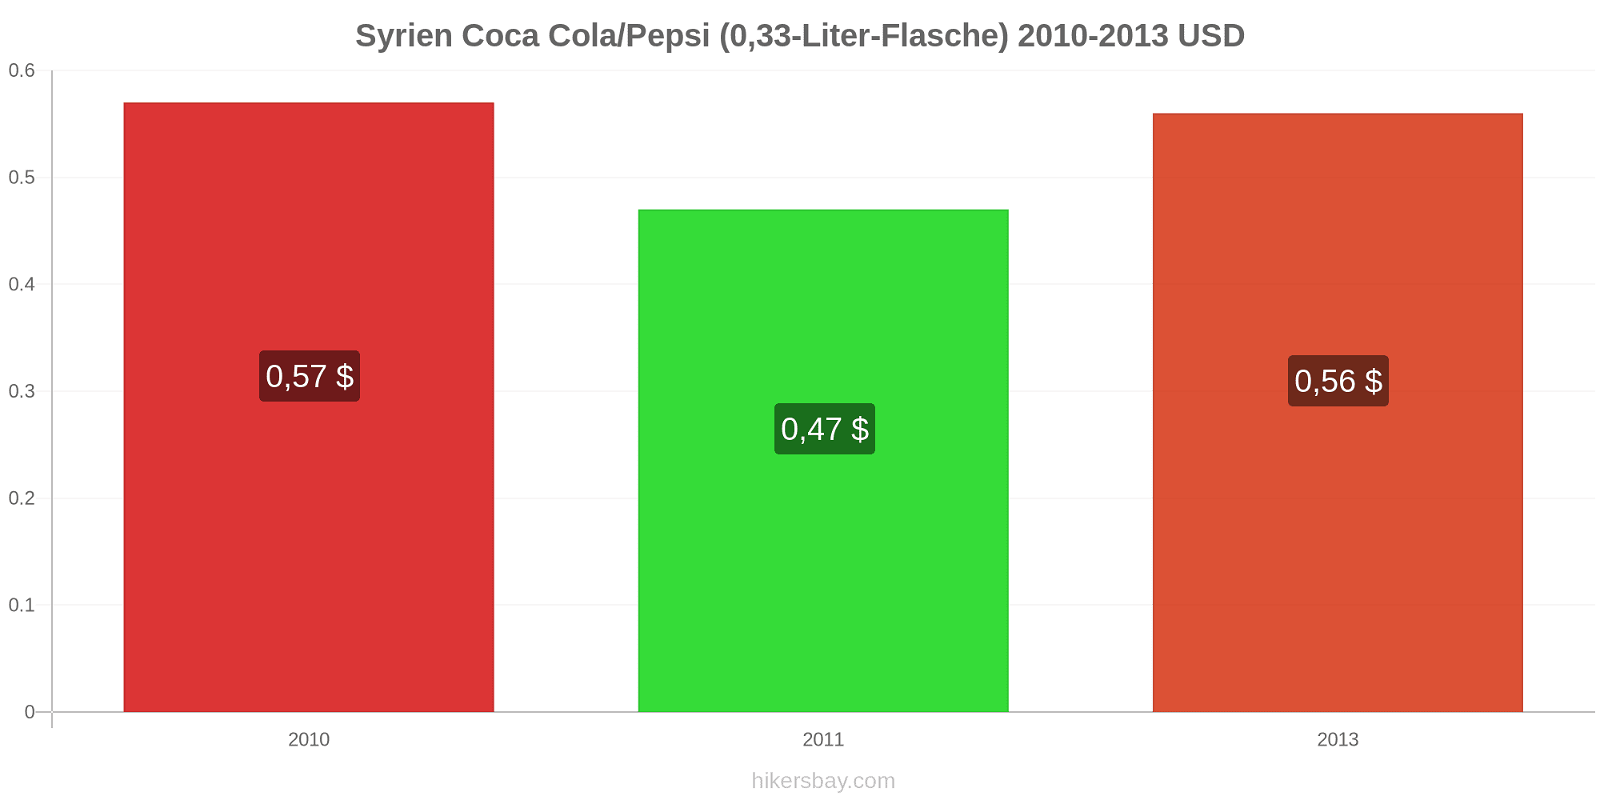 Syrien Preisänderungen Coke/Pepsi (0.33-Liter-Flasche) hikersbay.com